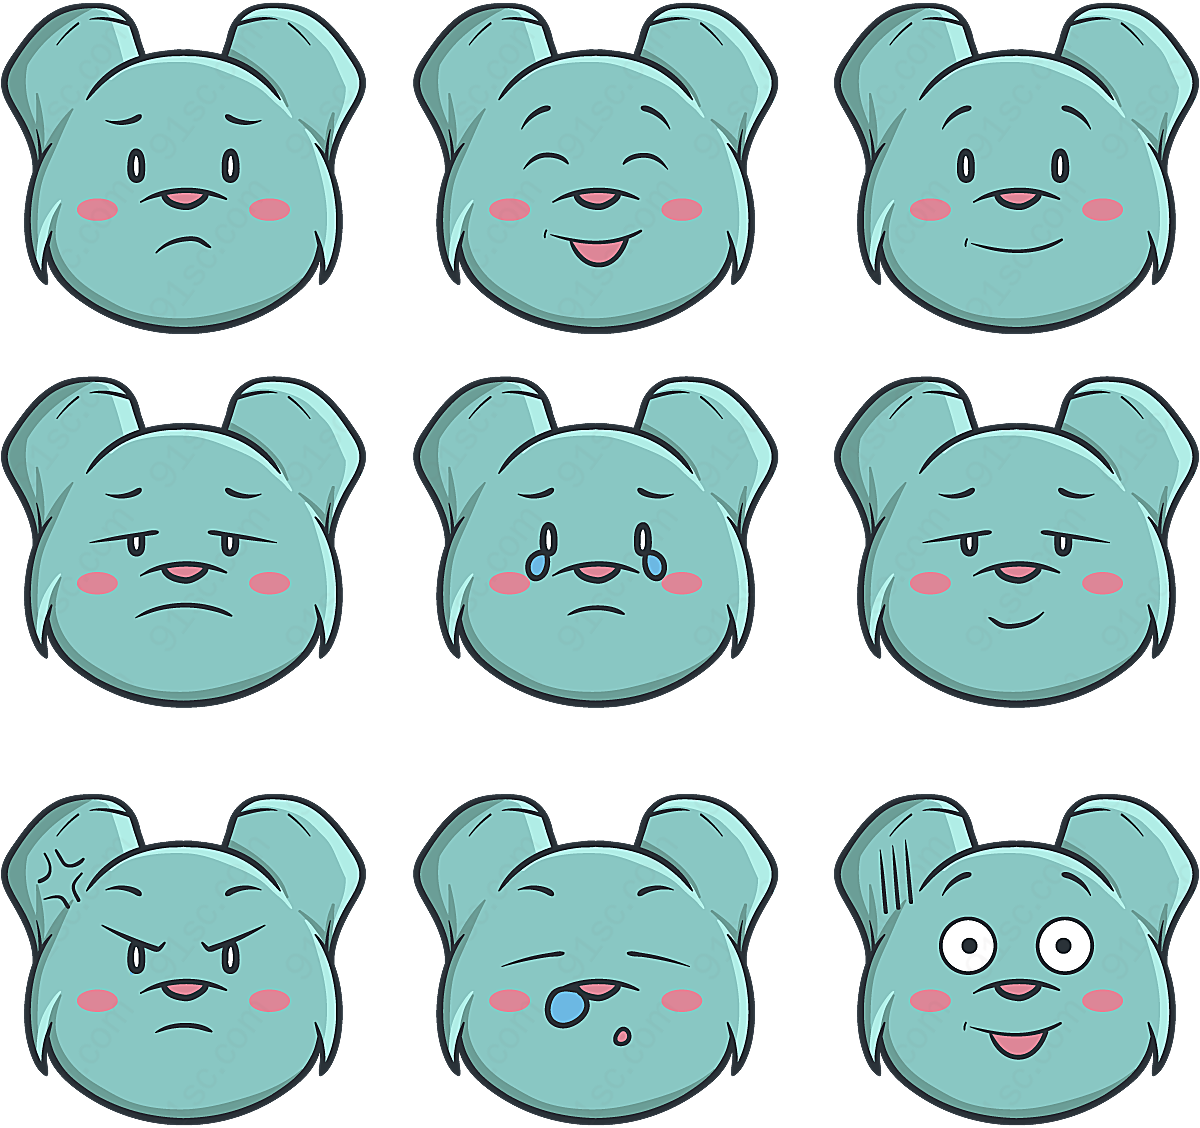 熊表情头像矢量矢量卡通动物